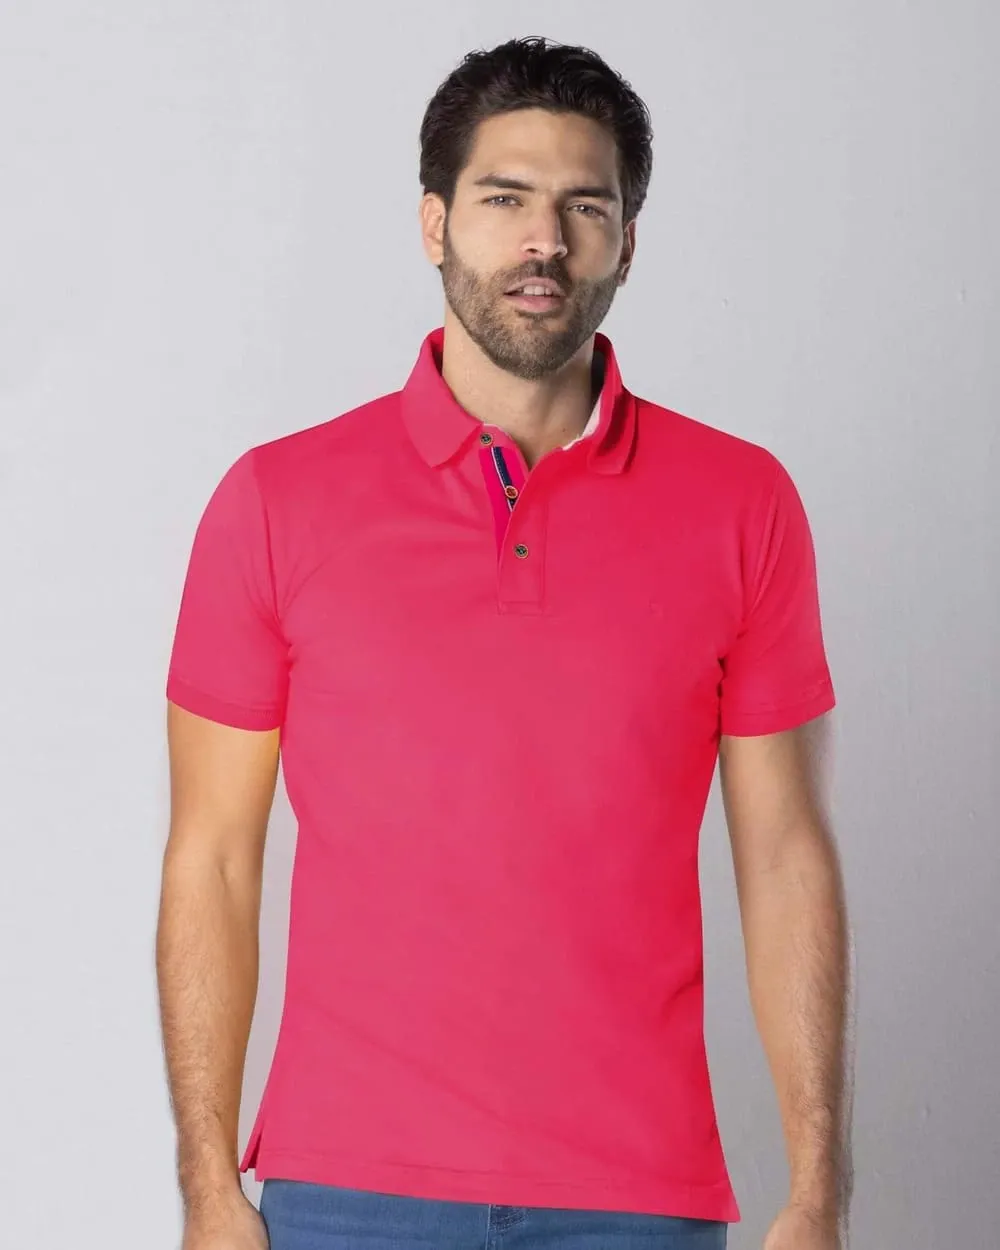 Camisa sport lisa slim fit manga corta rosado